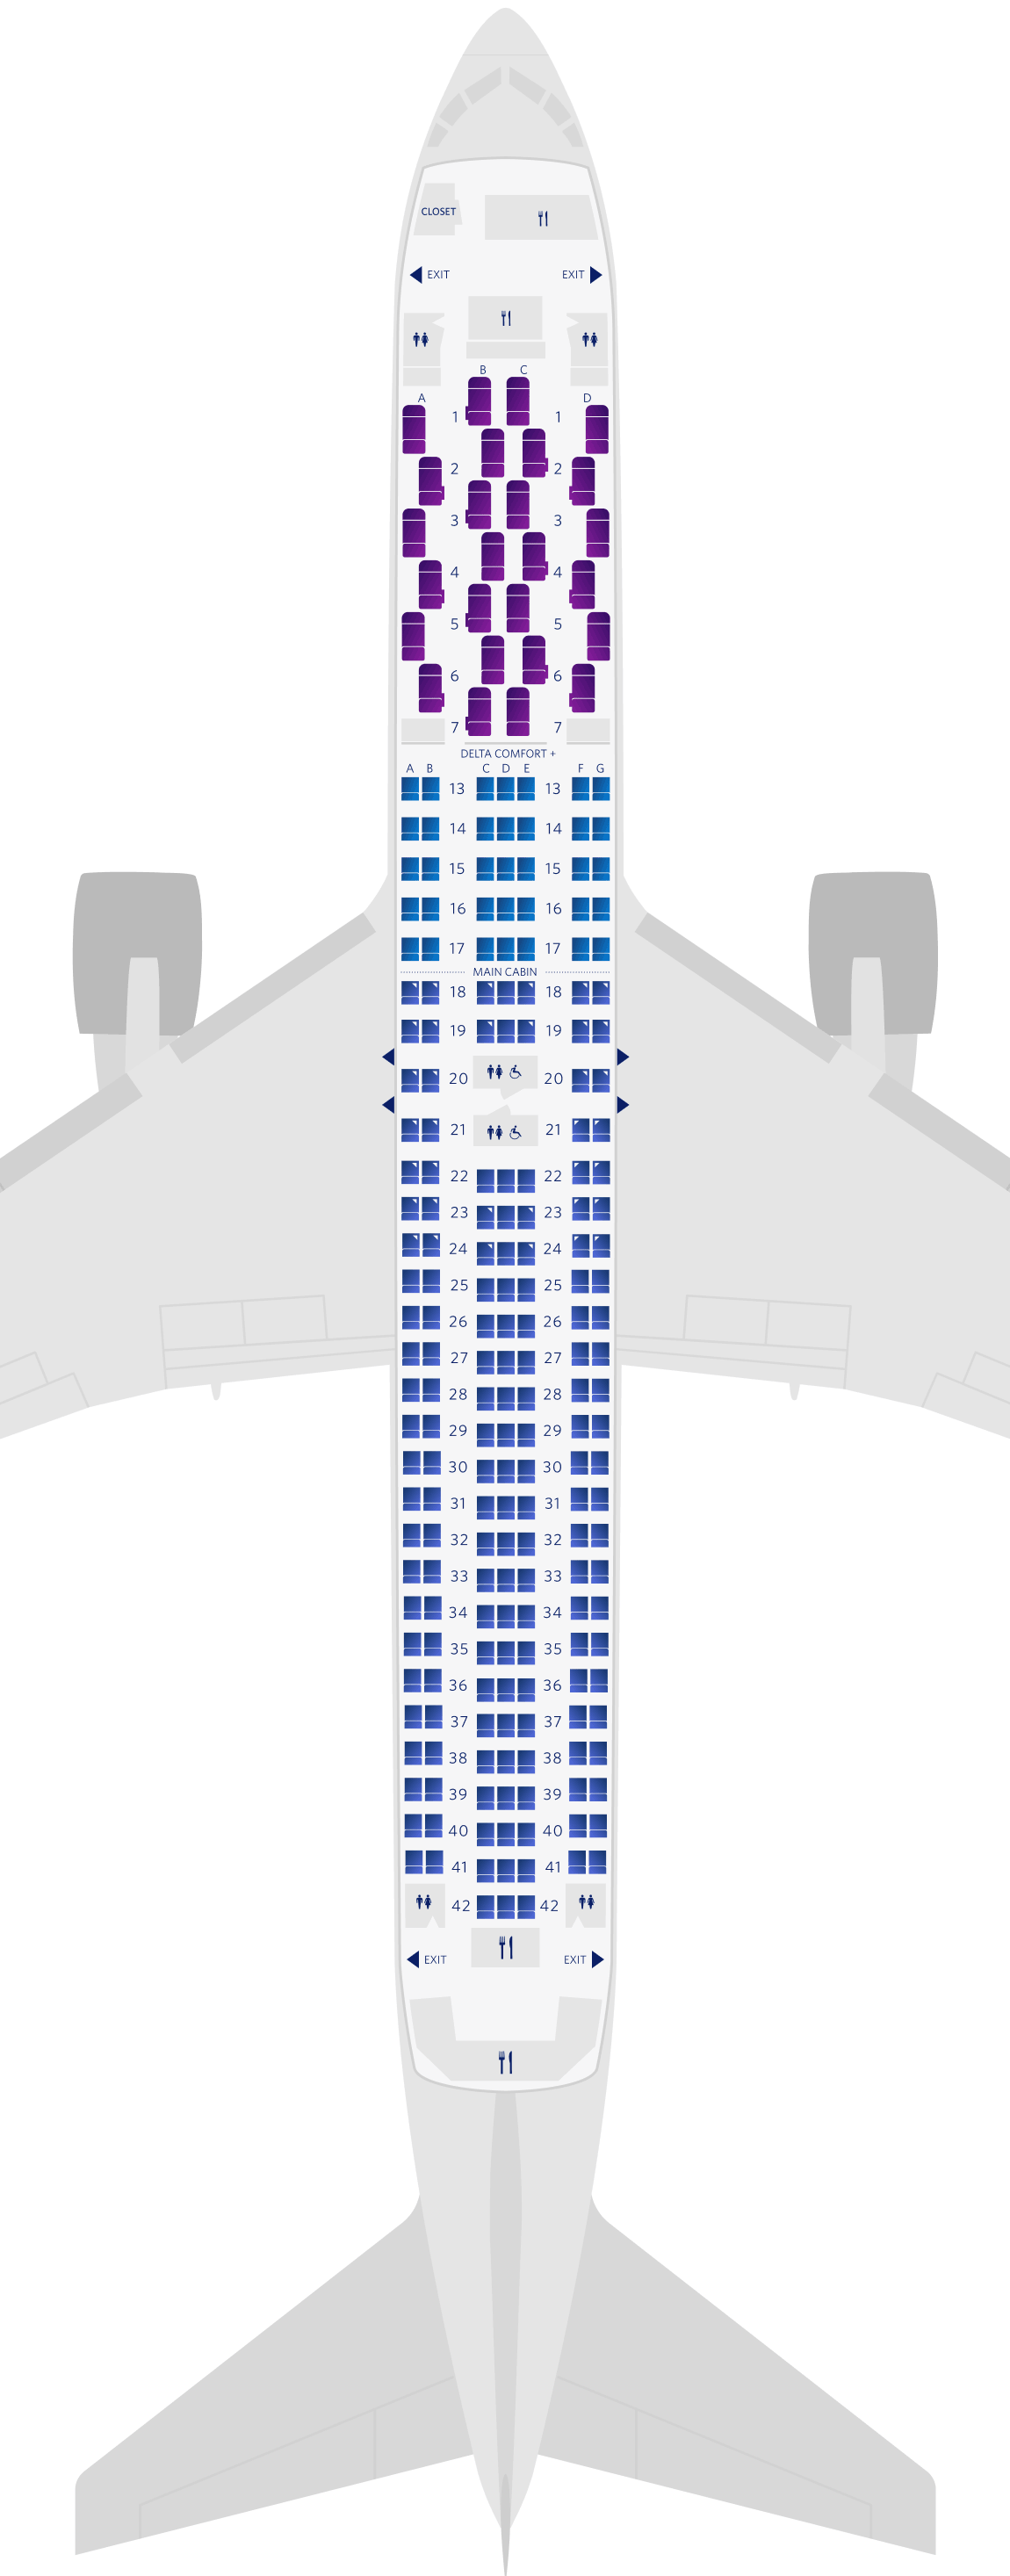 보잉 767-300ER (76Z) 좌석 배치도